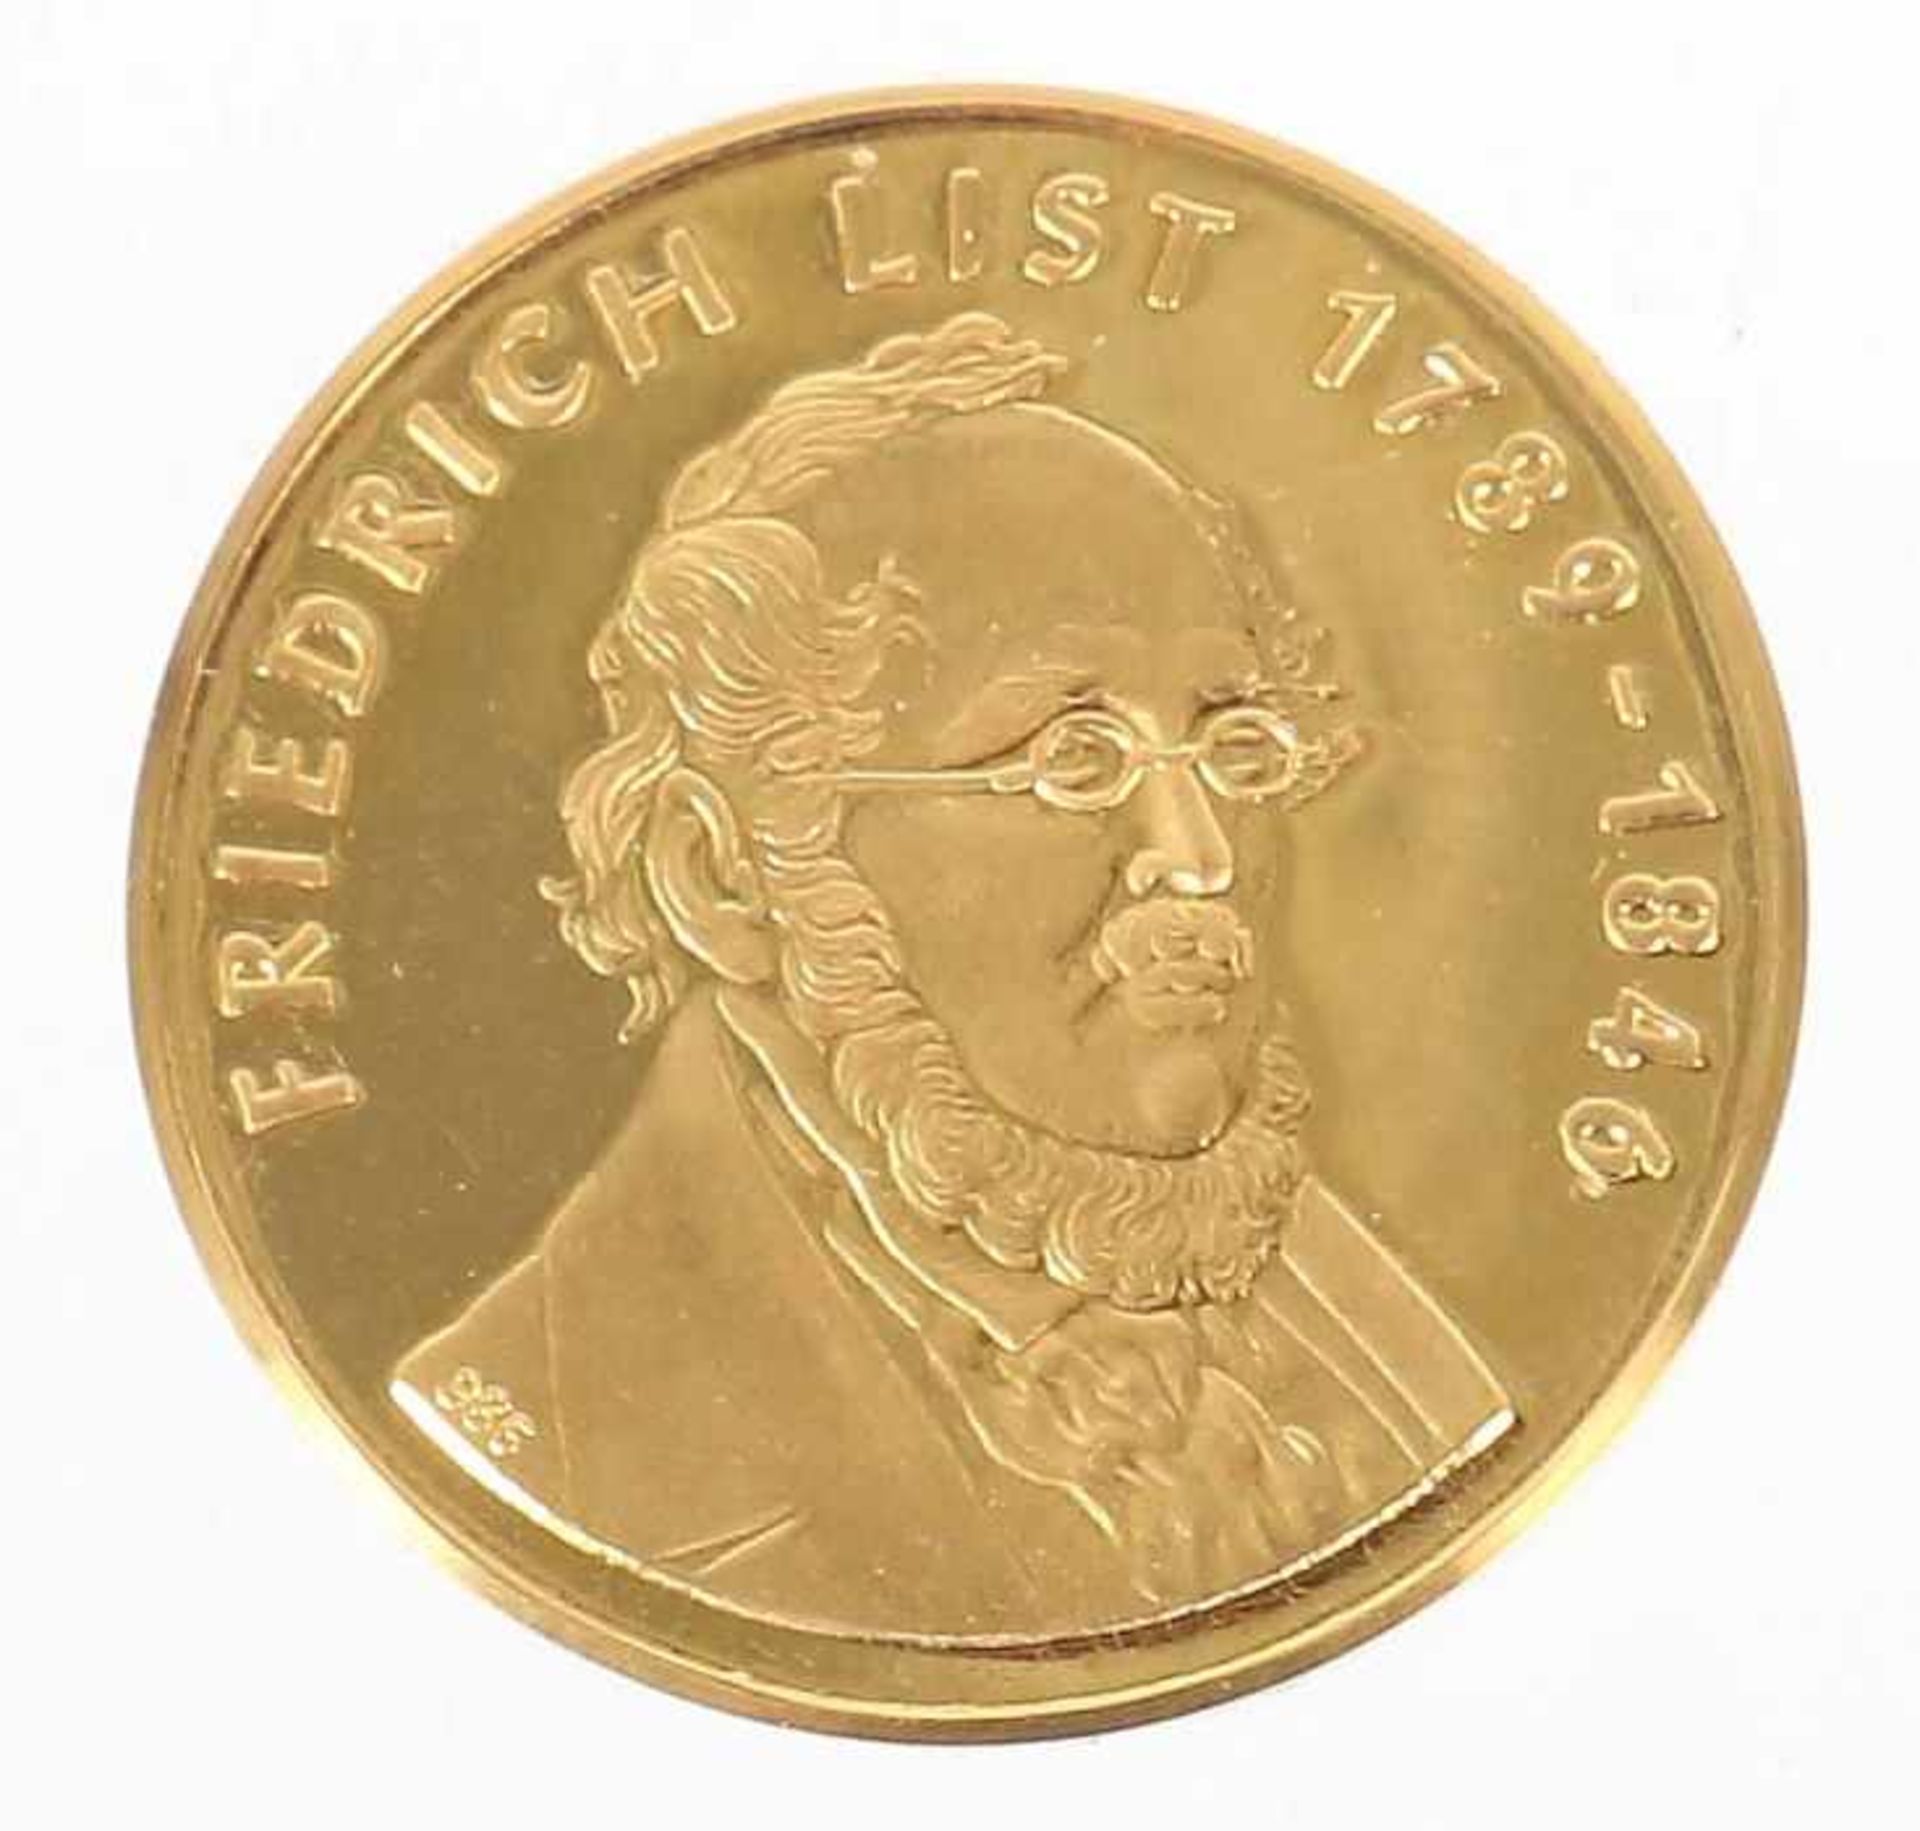 Goldmedaille Friedrich ListDeutschland, Gold 986, ca. 3,47 g, averse mit Portrait Friedrich List',